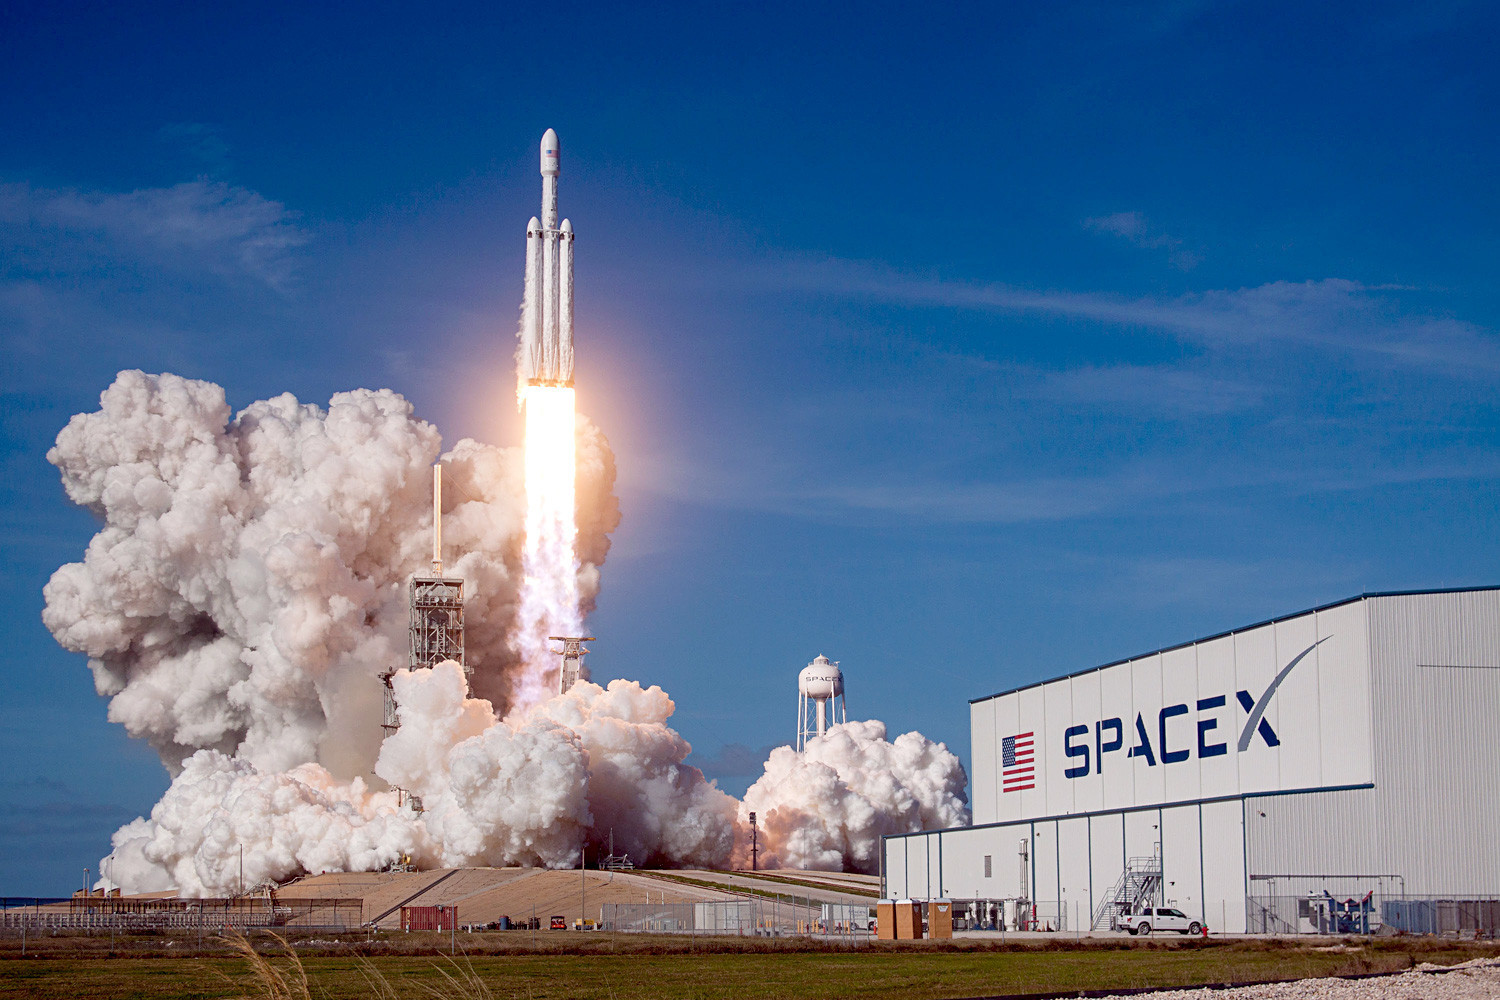 Foguete SpaceX Falcon Heavy decola transportando carga de demonstração para o espaço em fevereiro de 2018 no Cabo Canaveral, Flórida.